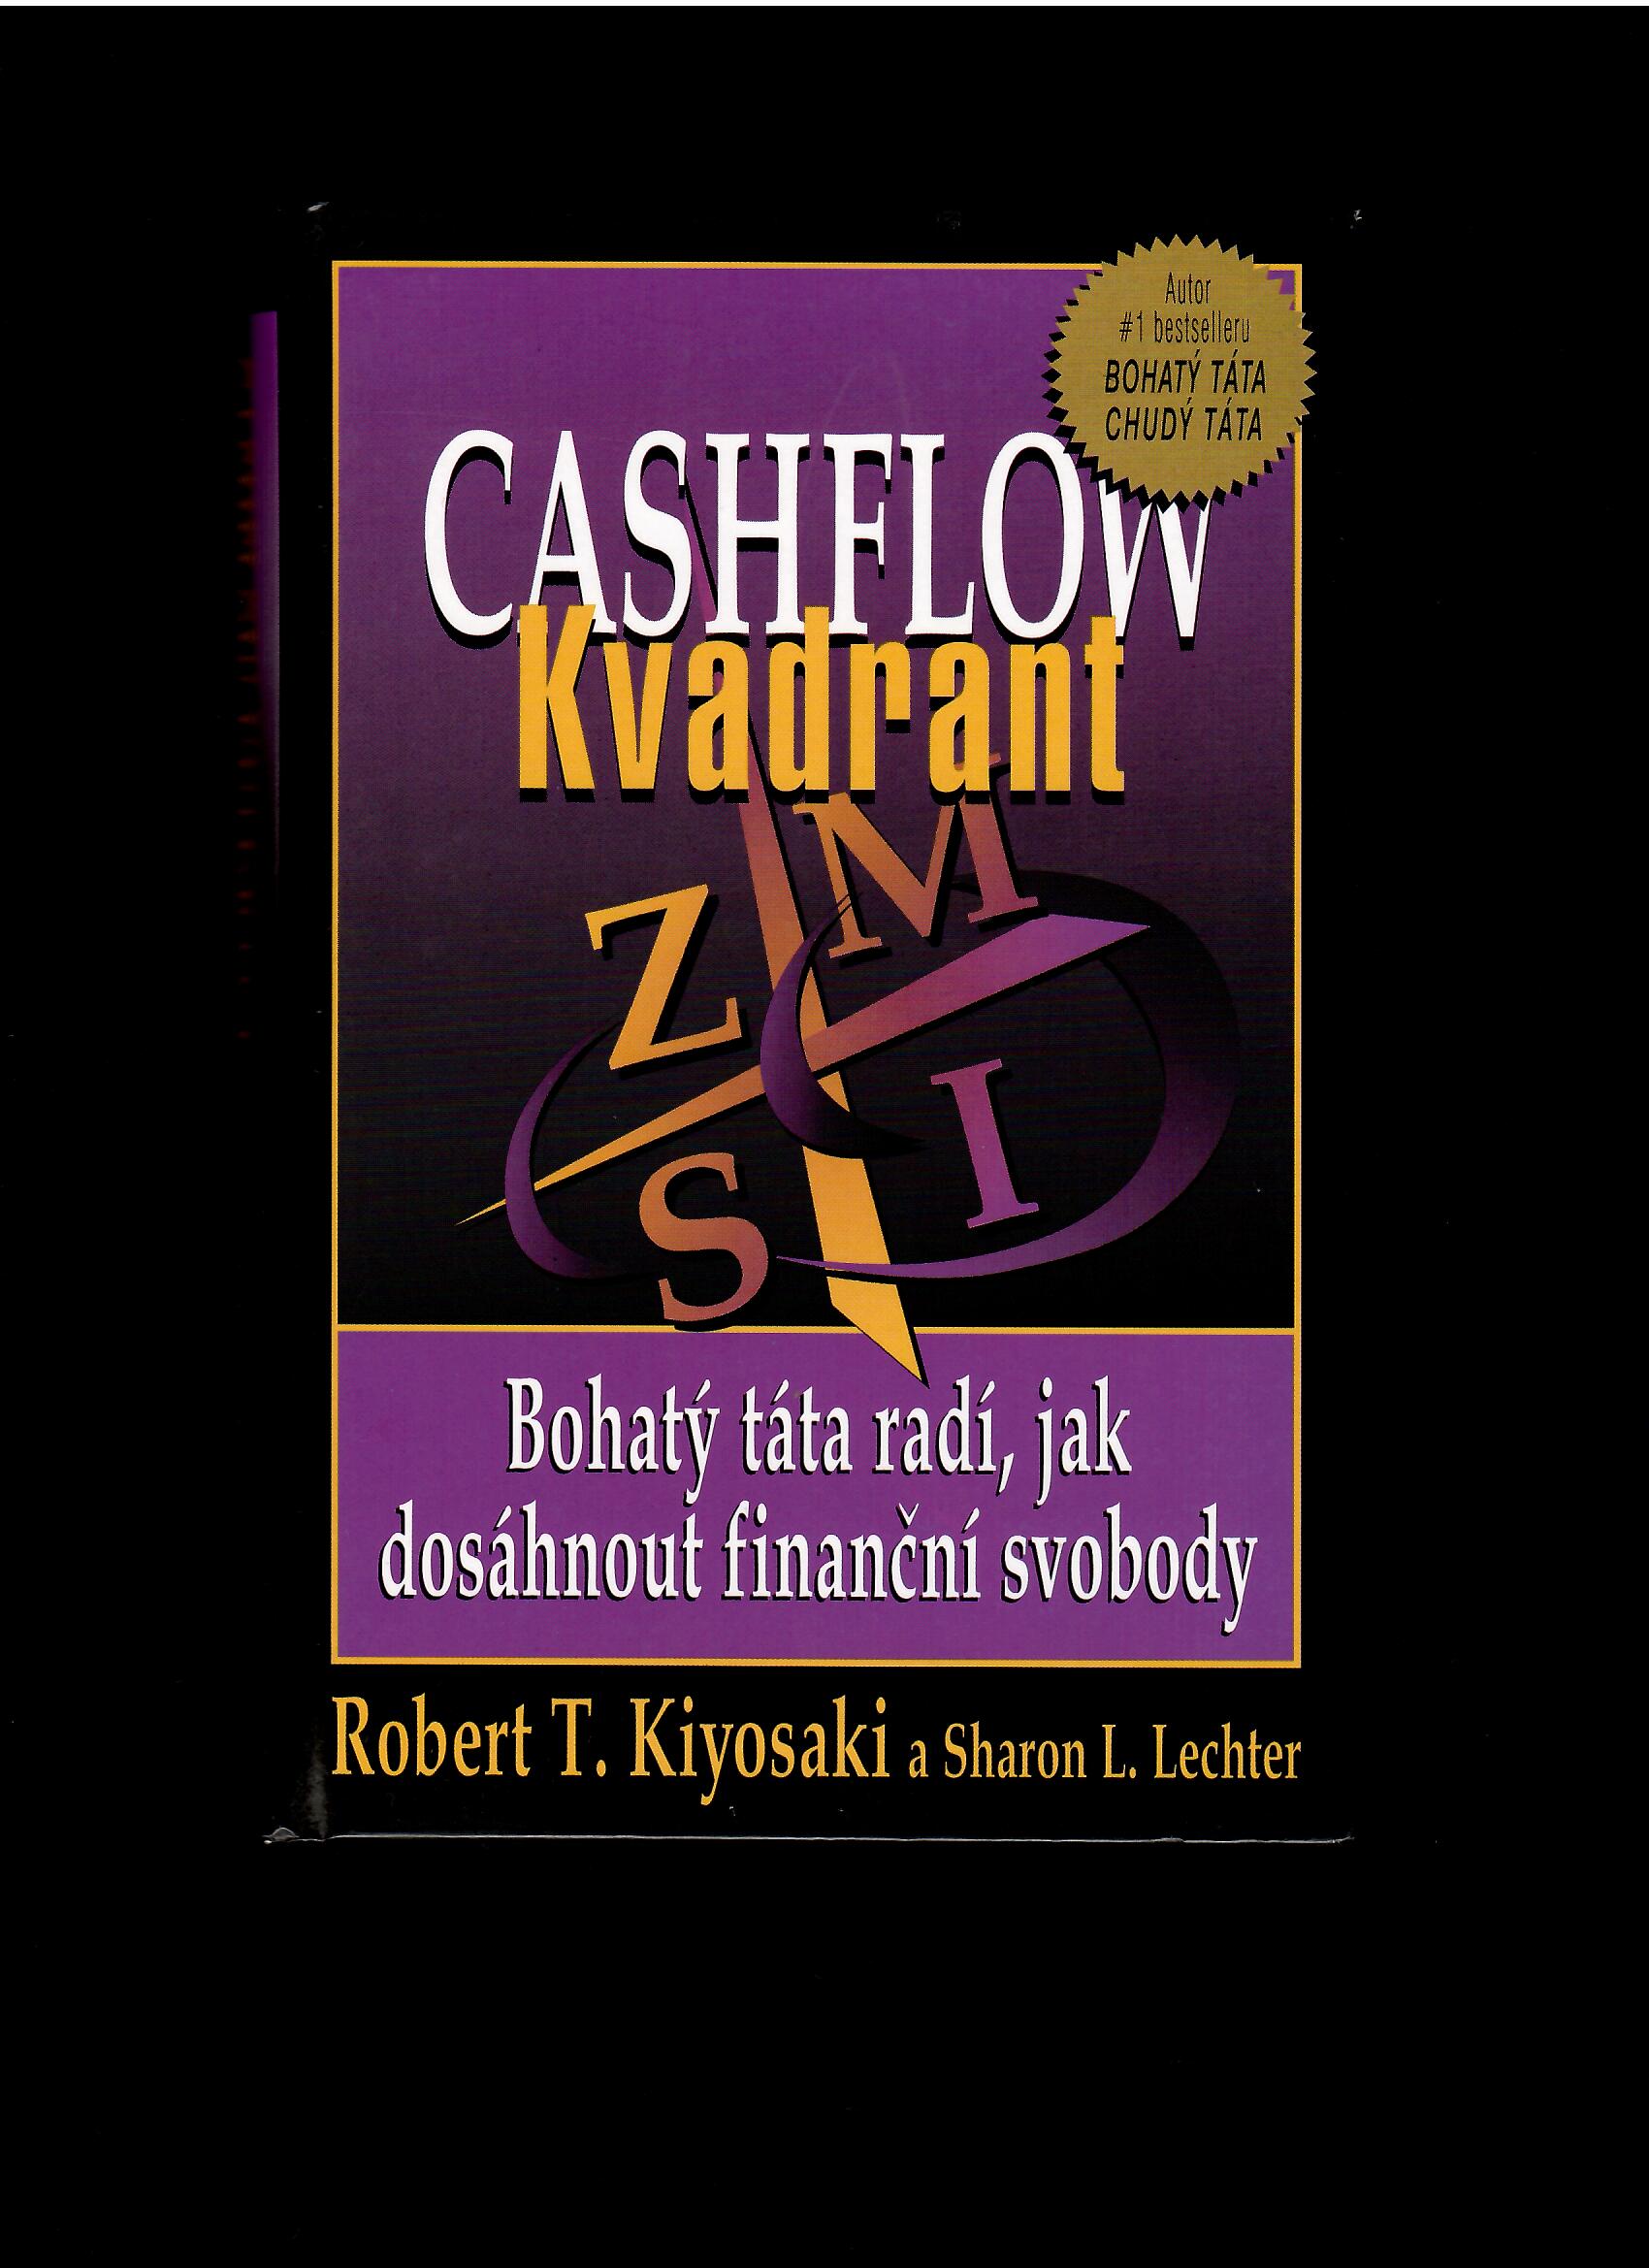 Rober Kiyosaki: Cashflow Kvadrant